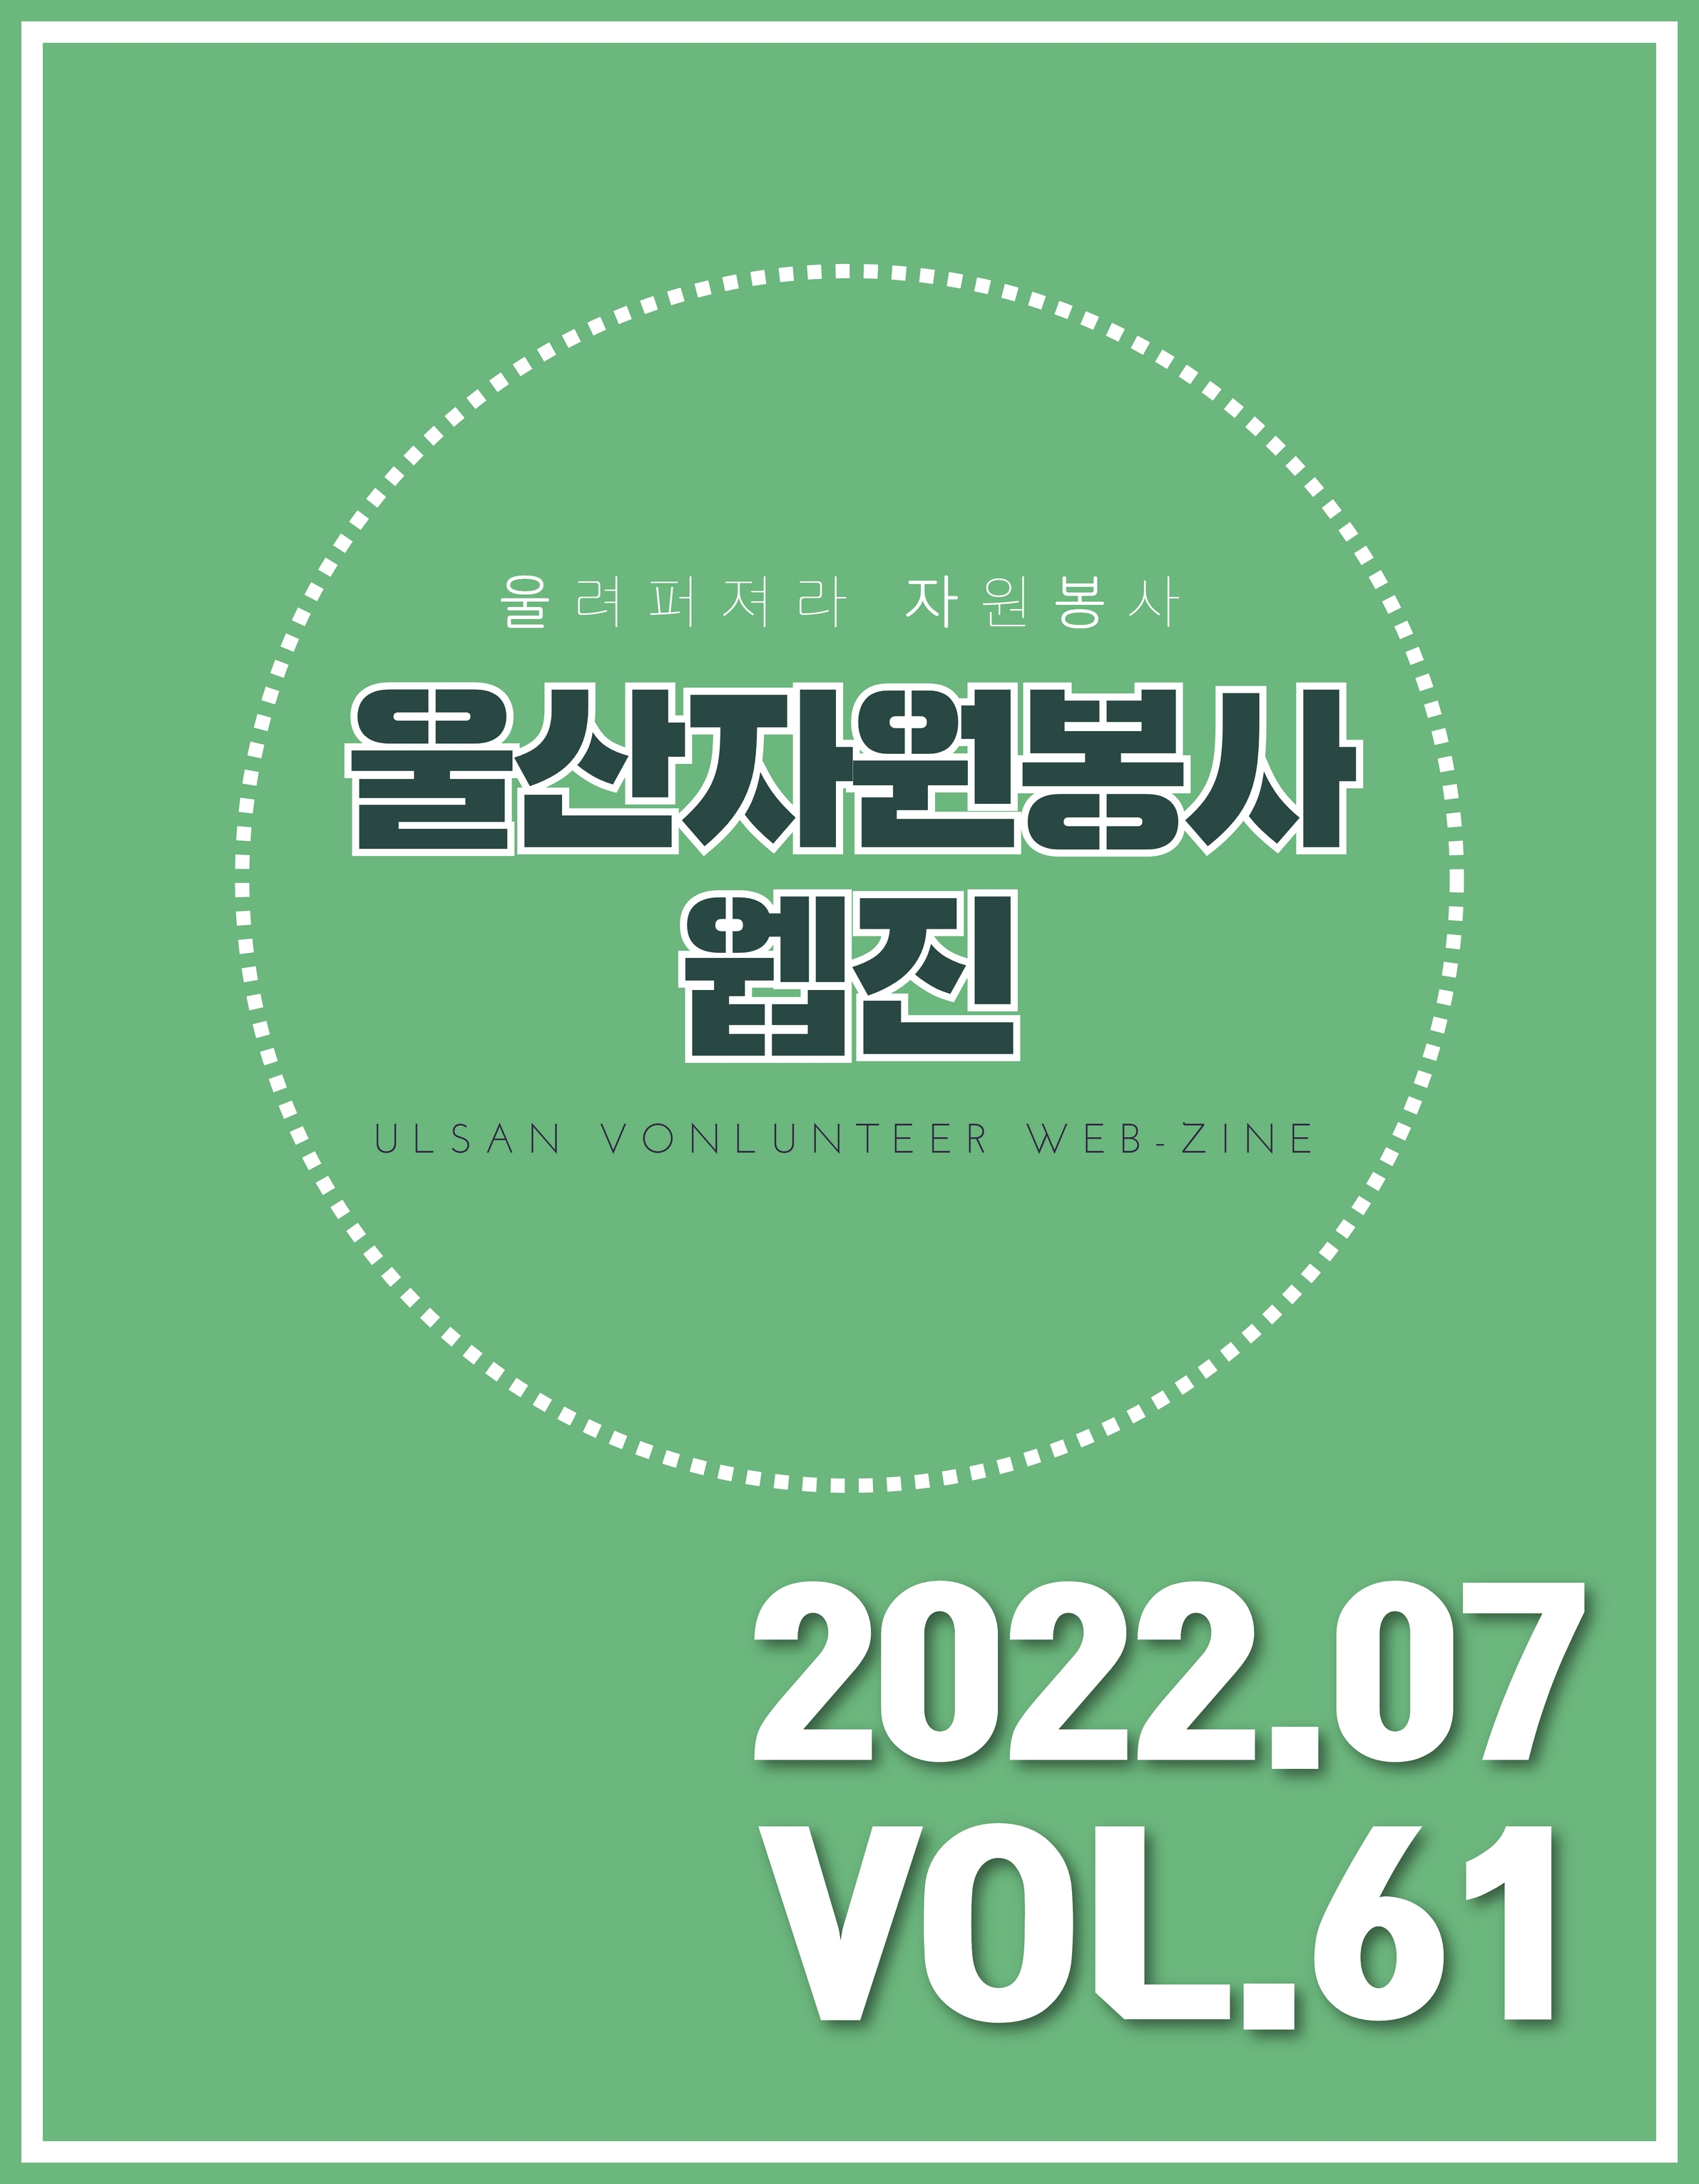 울산자원봉사웹진 61호(2022-07)